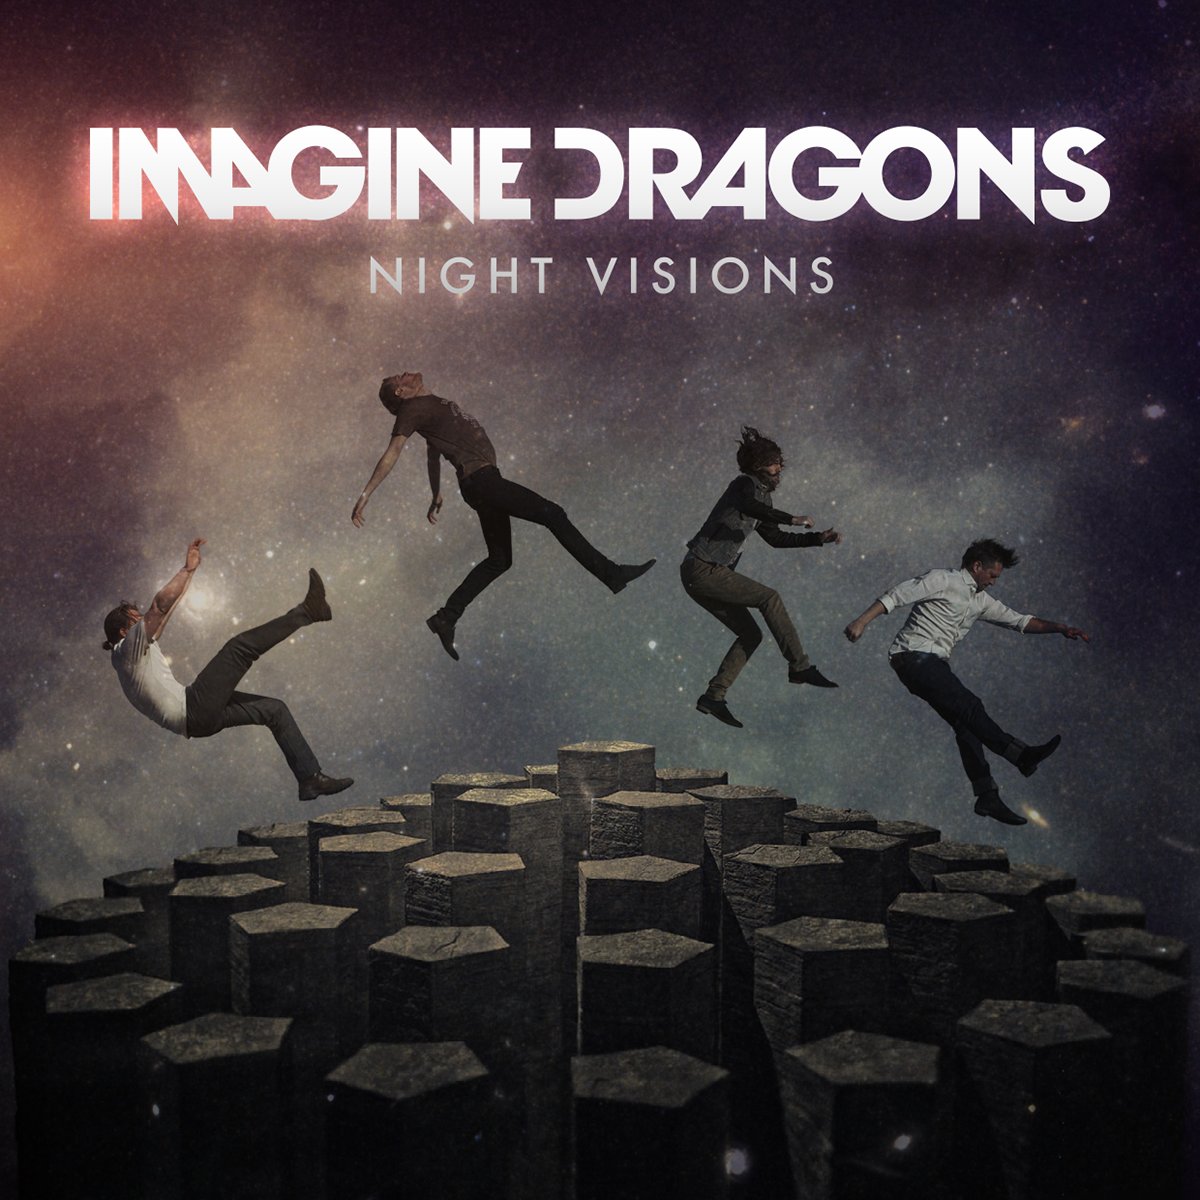 imagine dragons night visions album